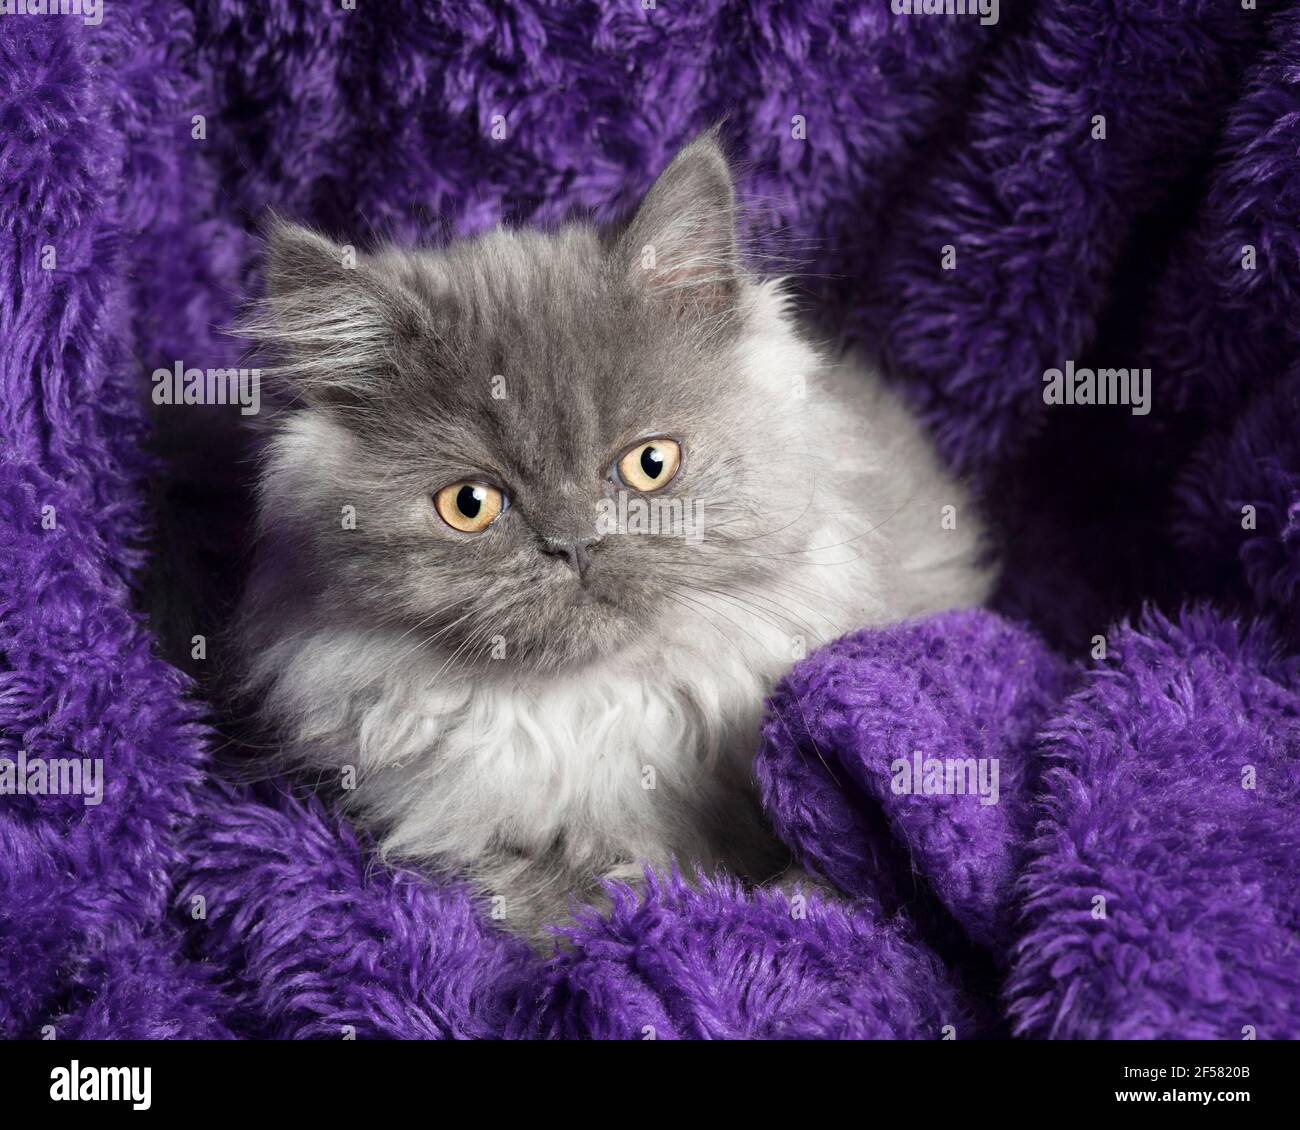 Joli long chaton gris à poil long assis, emmêlé dans une couverture pourpre fourrure, regardant l'appareil photo. Banque D'Images